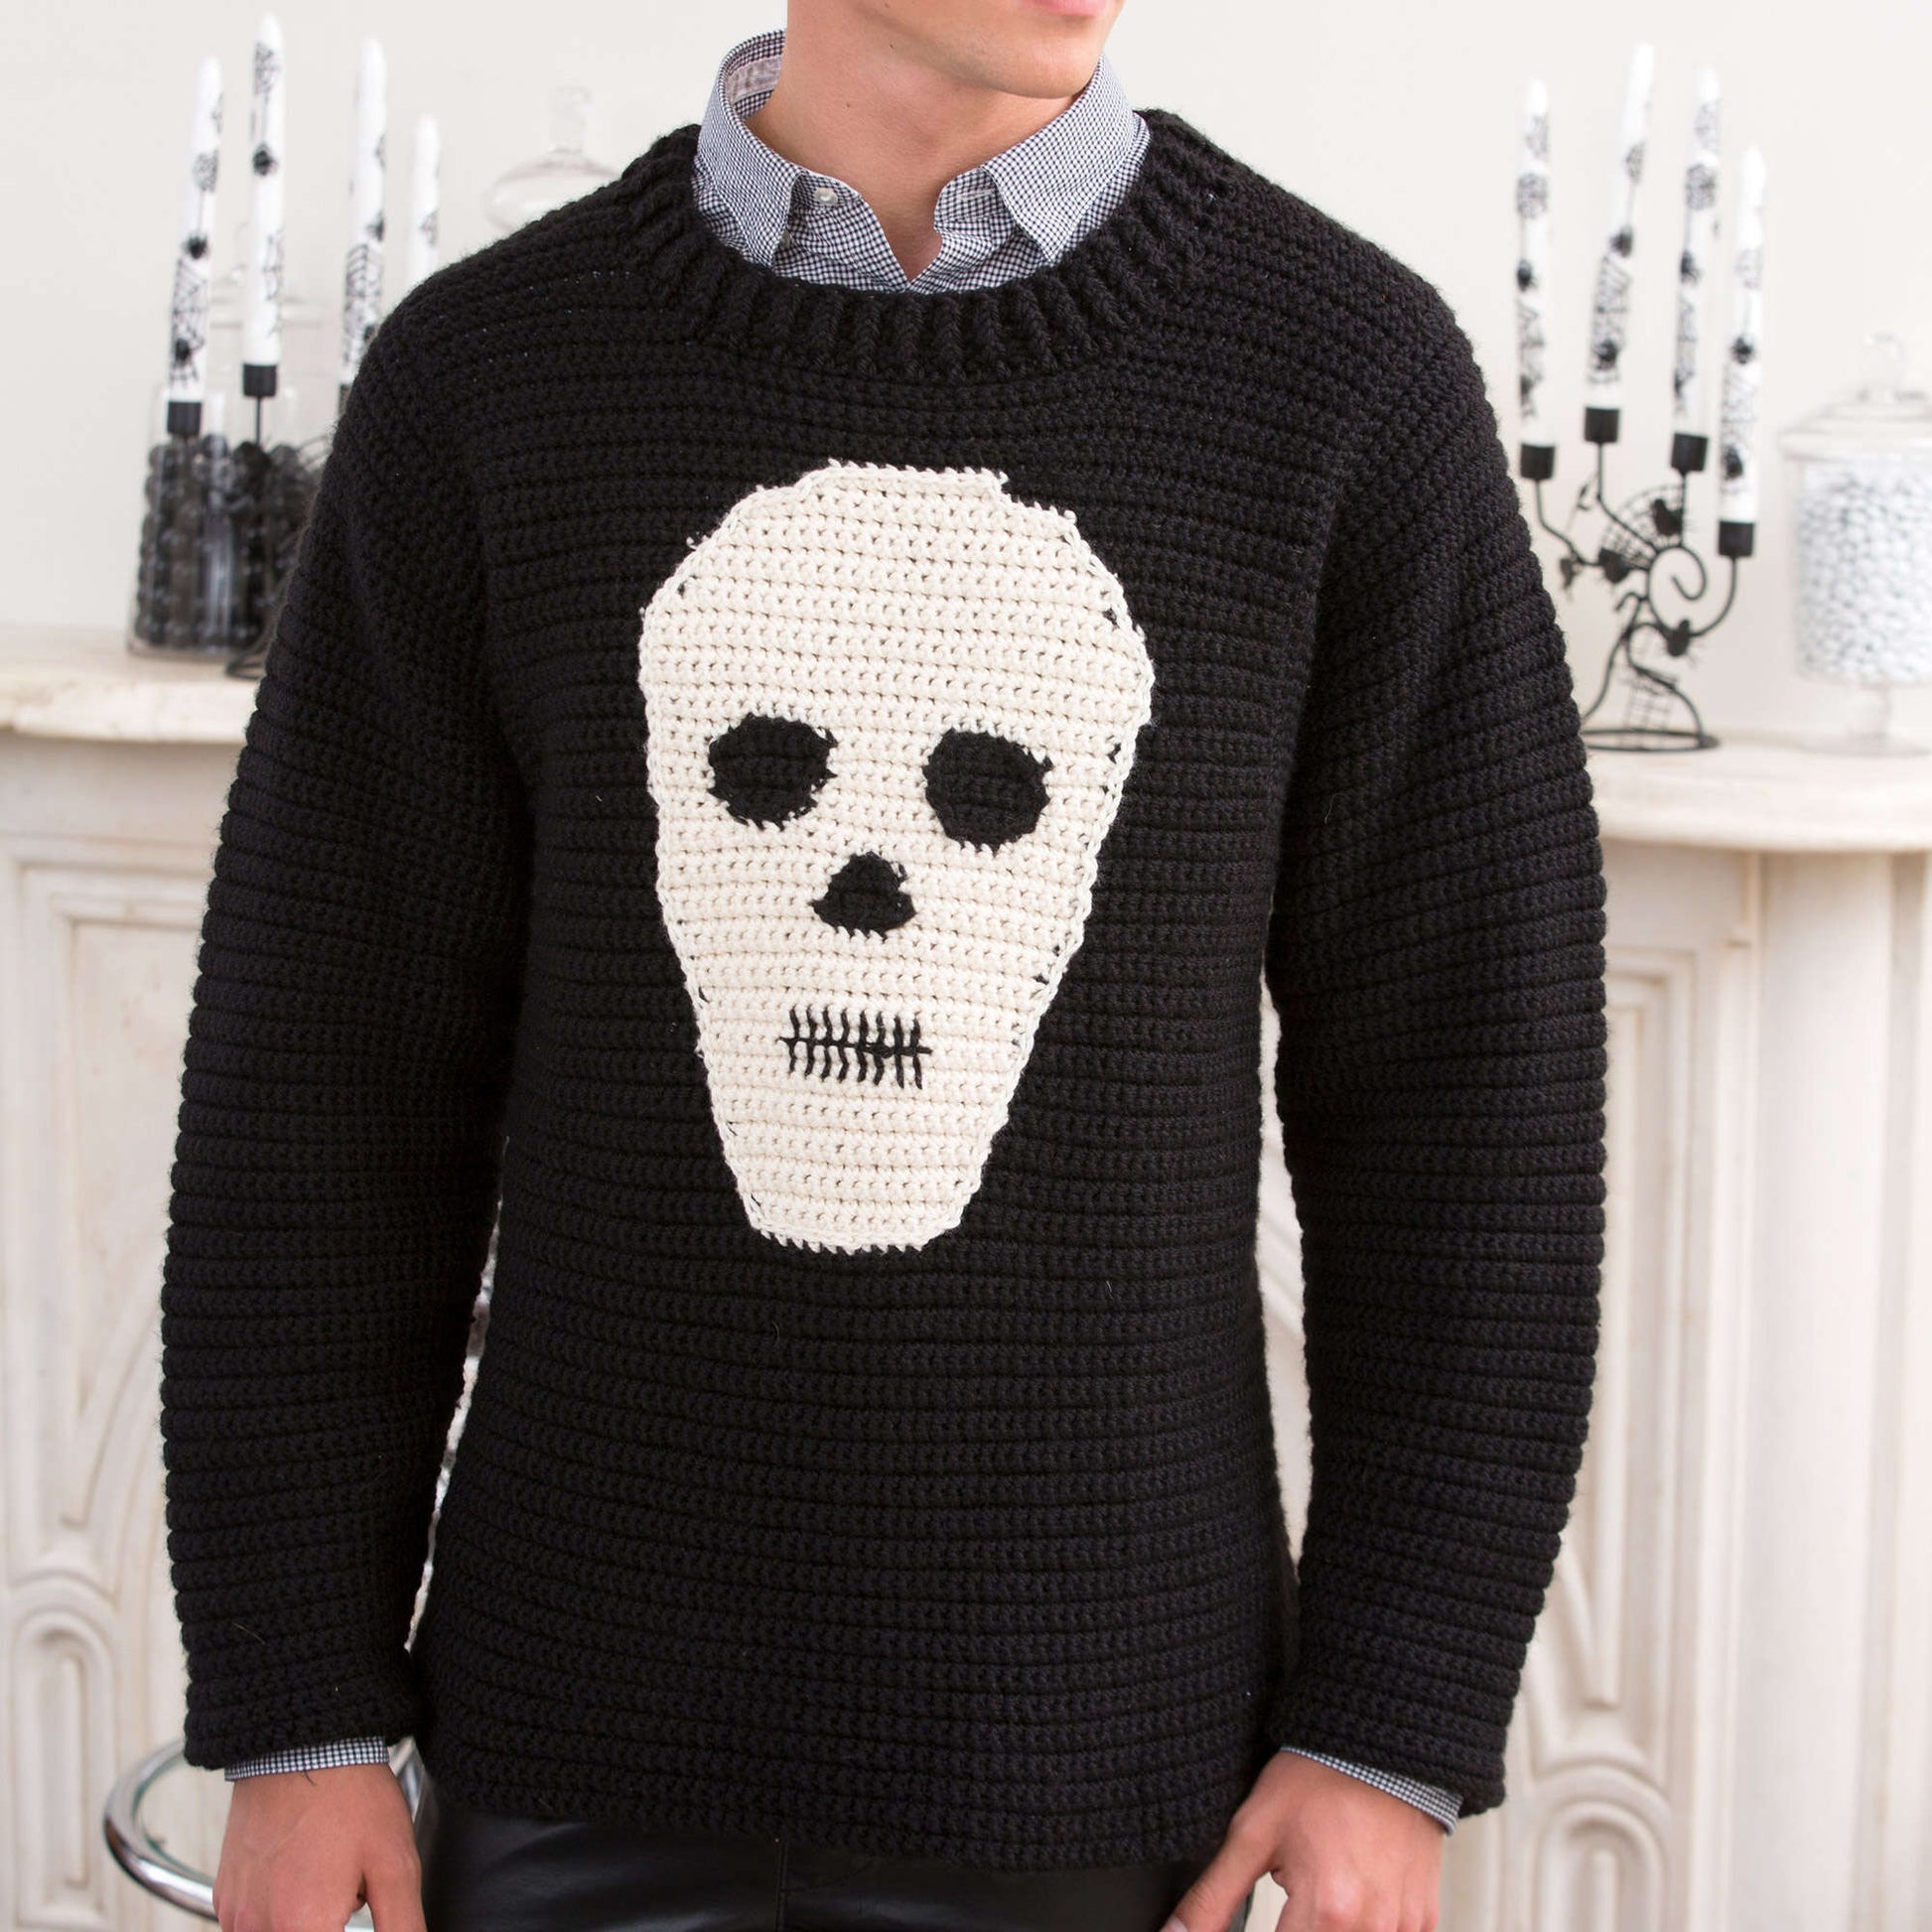 Free Red Heart Crochet Skull Sweater Pattern